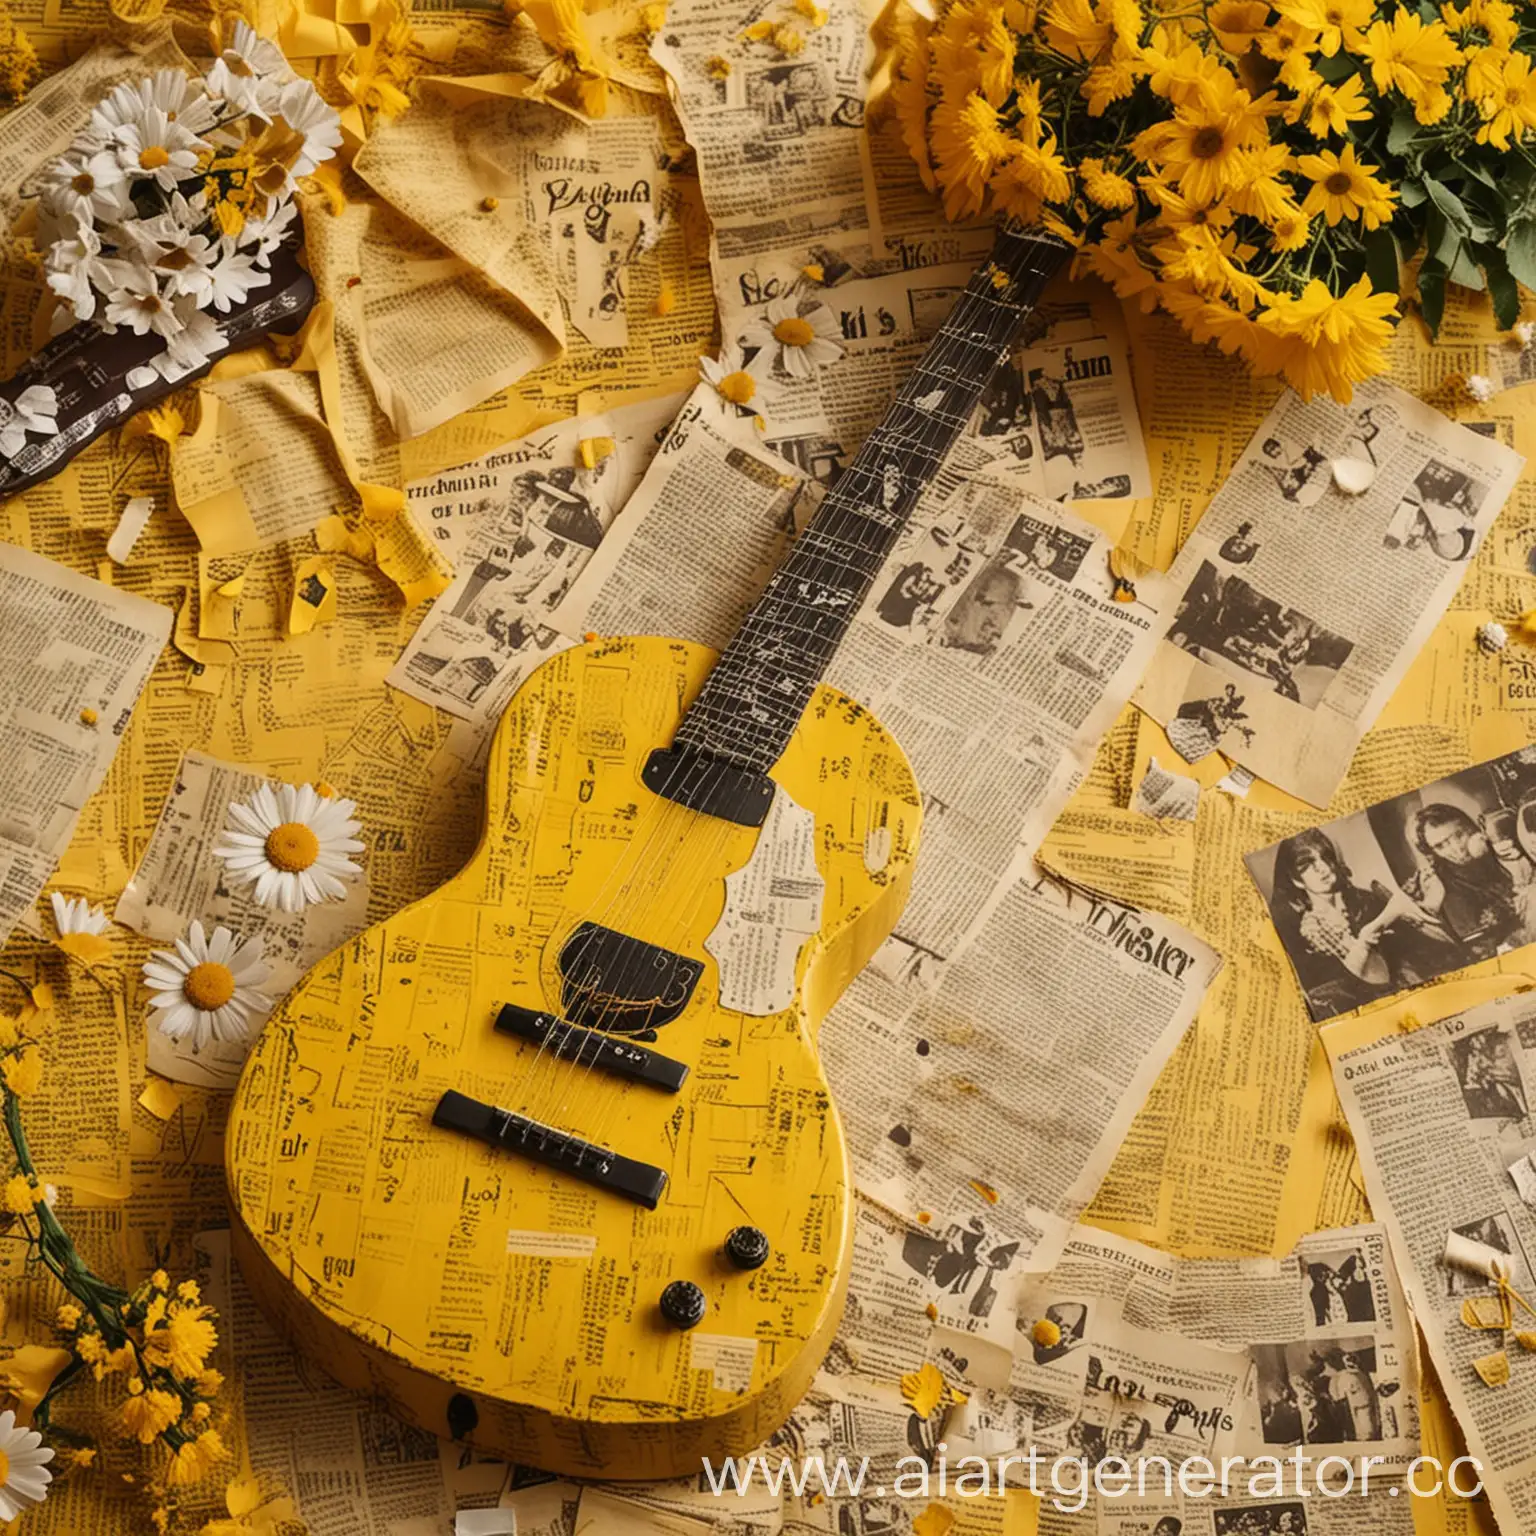 Обложка фон, жёлтый цвет, отрывки газет, позолота, ромашки, мимоза, гитара, всё в жёлтом цвете, размер 1920×768